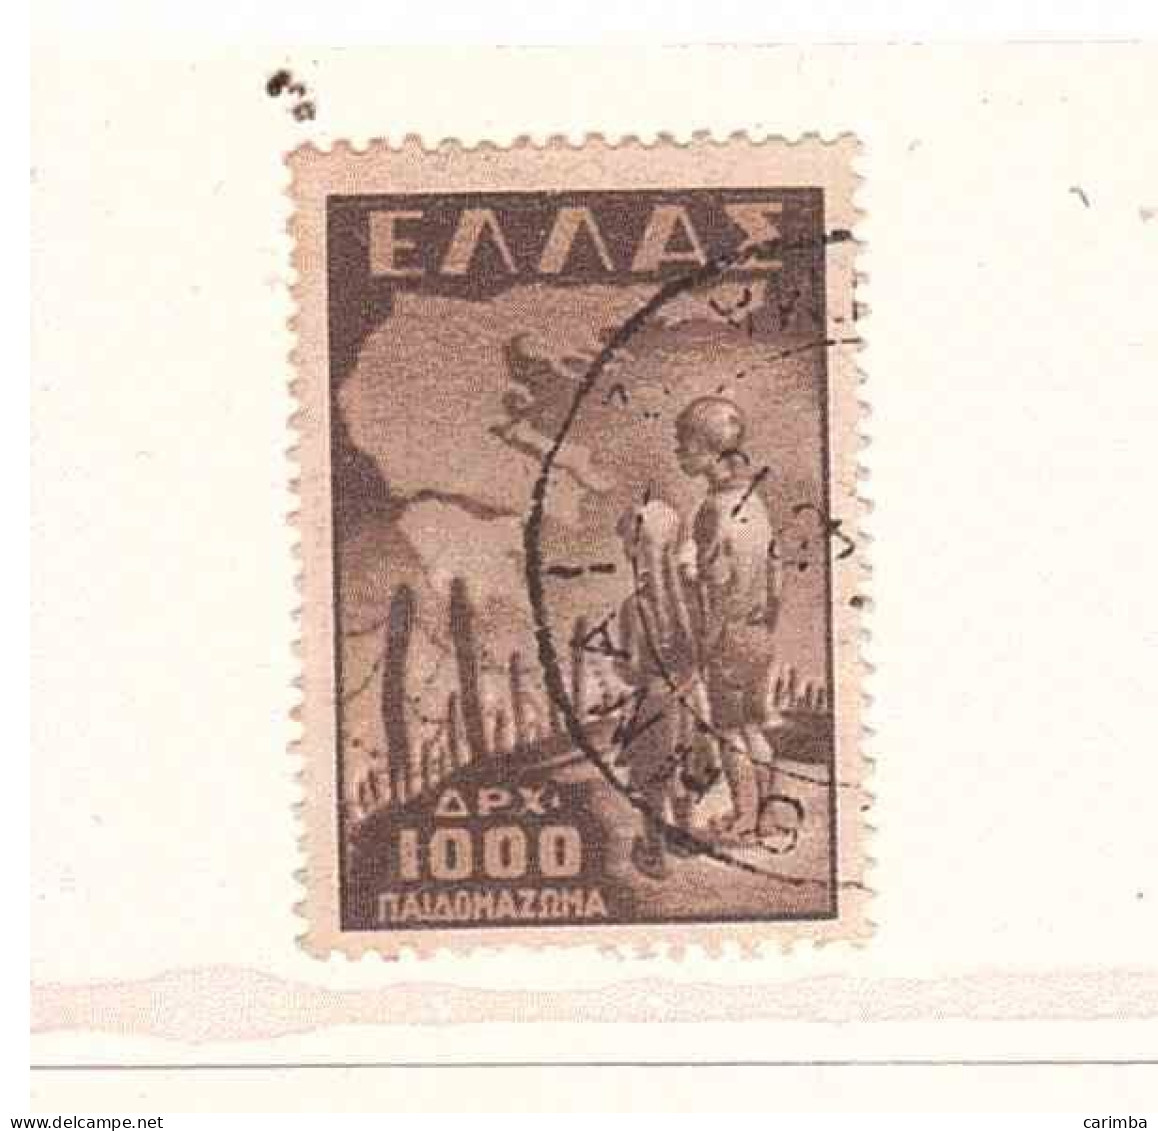 1949 APX 1000 INFANZIA DEPORTATA - Oblitérés